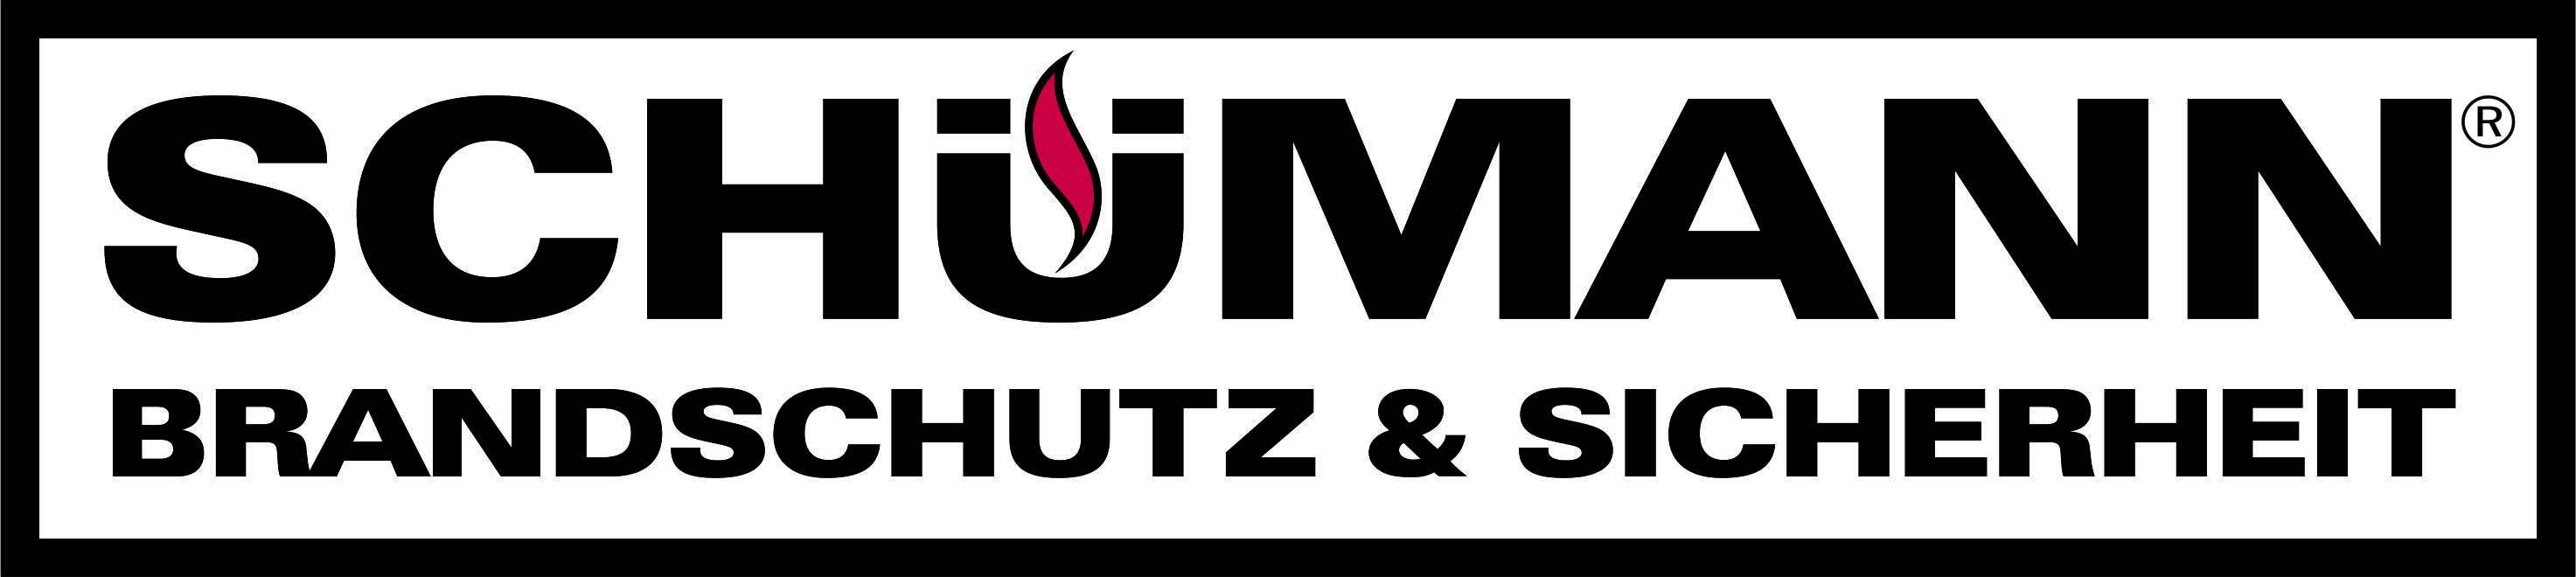 Logo Schümann Brandschutz & Sicherheit GmbH